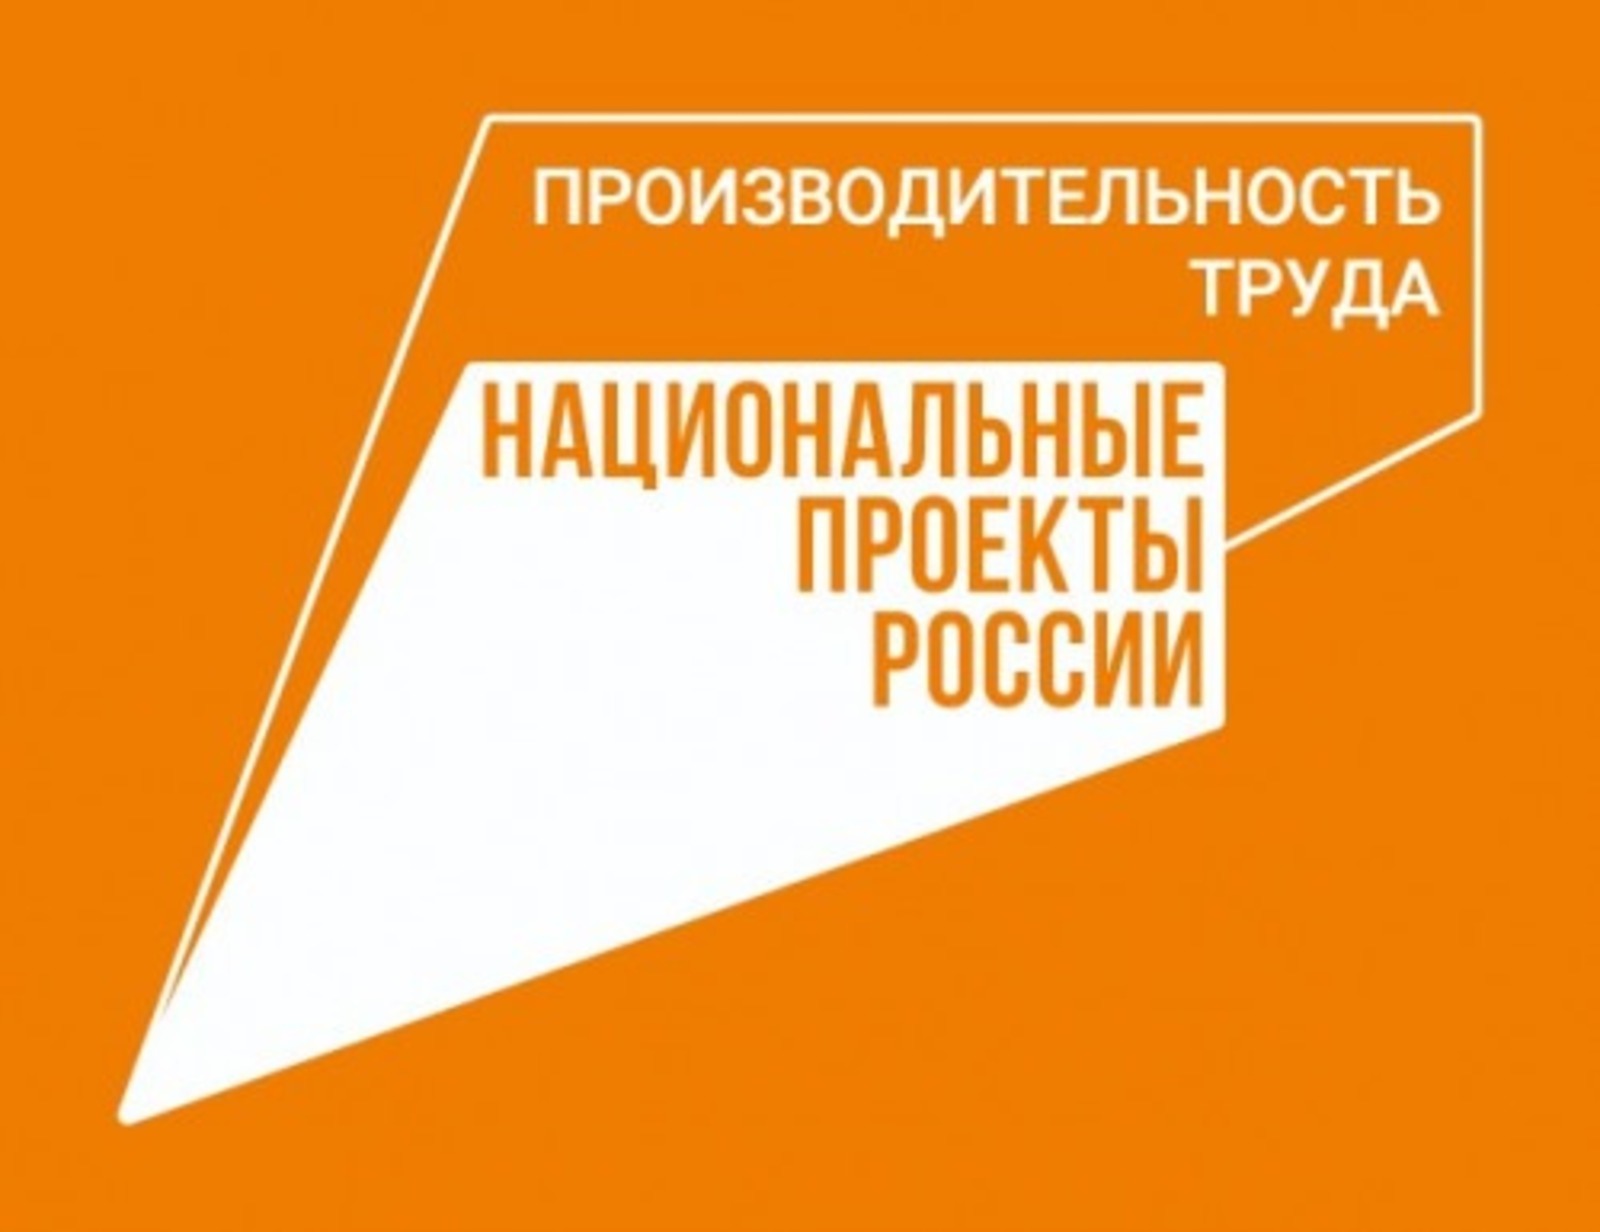 Башкирия подтвердила свой статус в группе регионов-лидеров нацпроекта «Производительность труда»